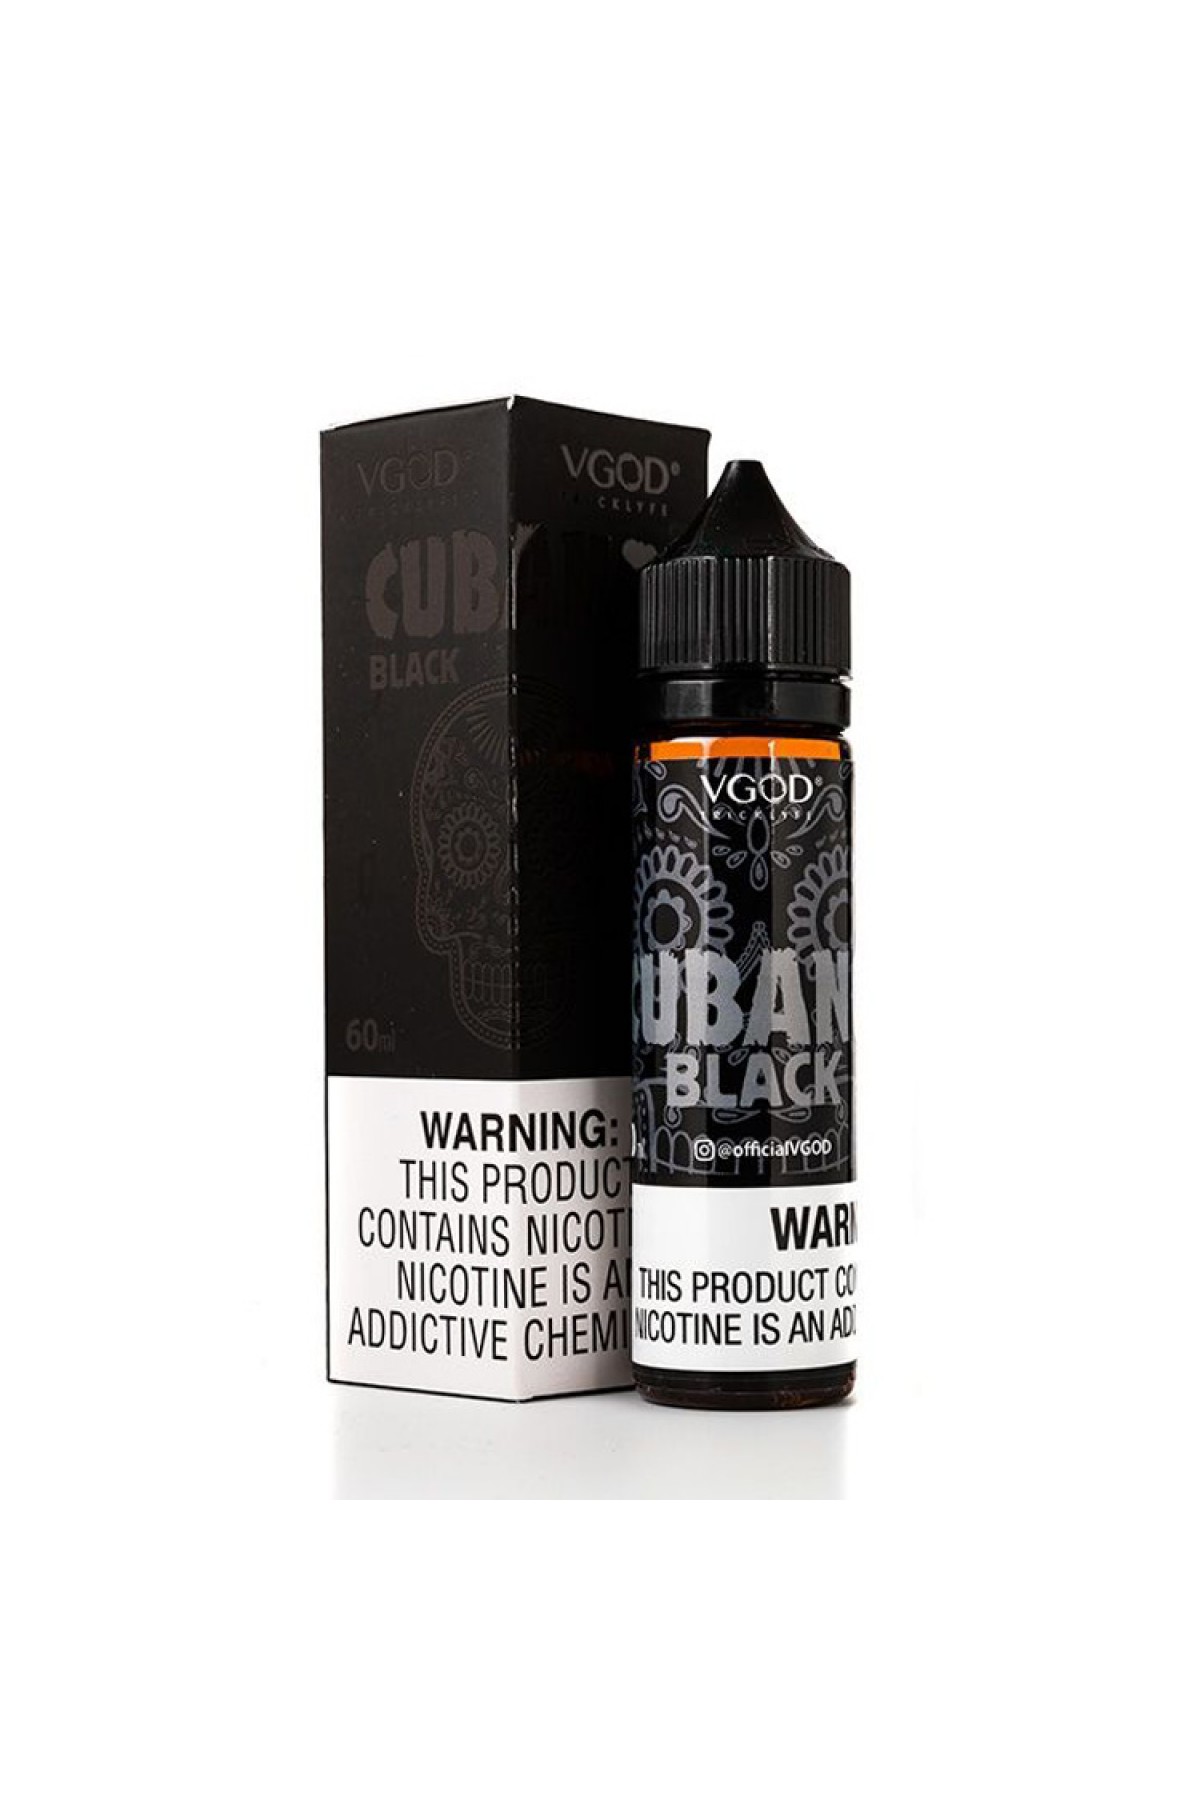 VGOD - Cubano Black (60mL) E-Likit